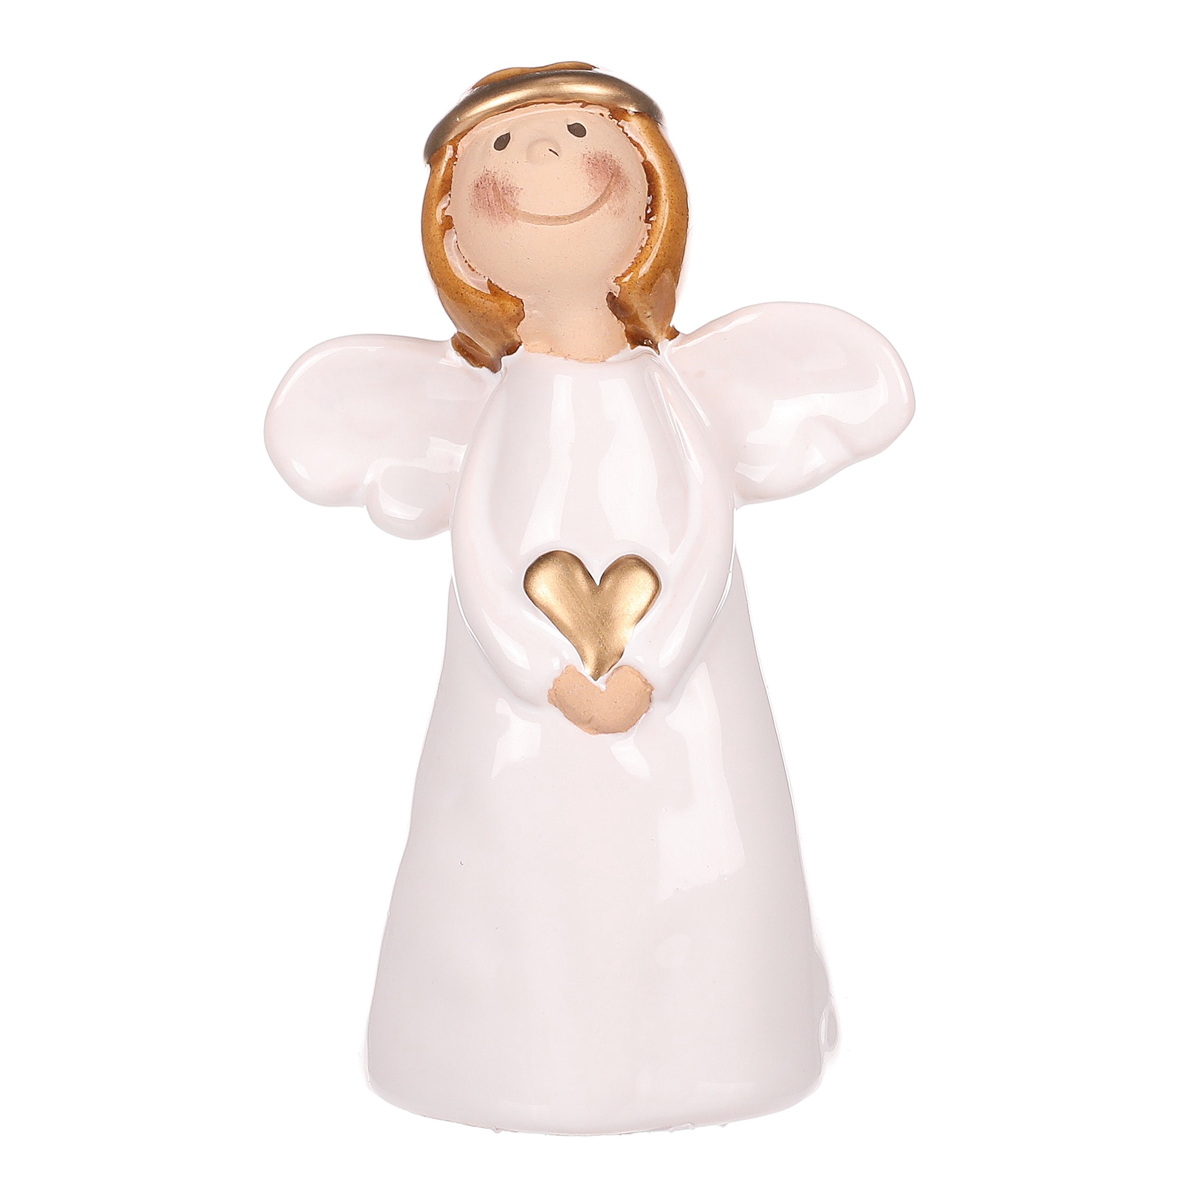 Anděl bílý držící srdce, keramika